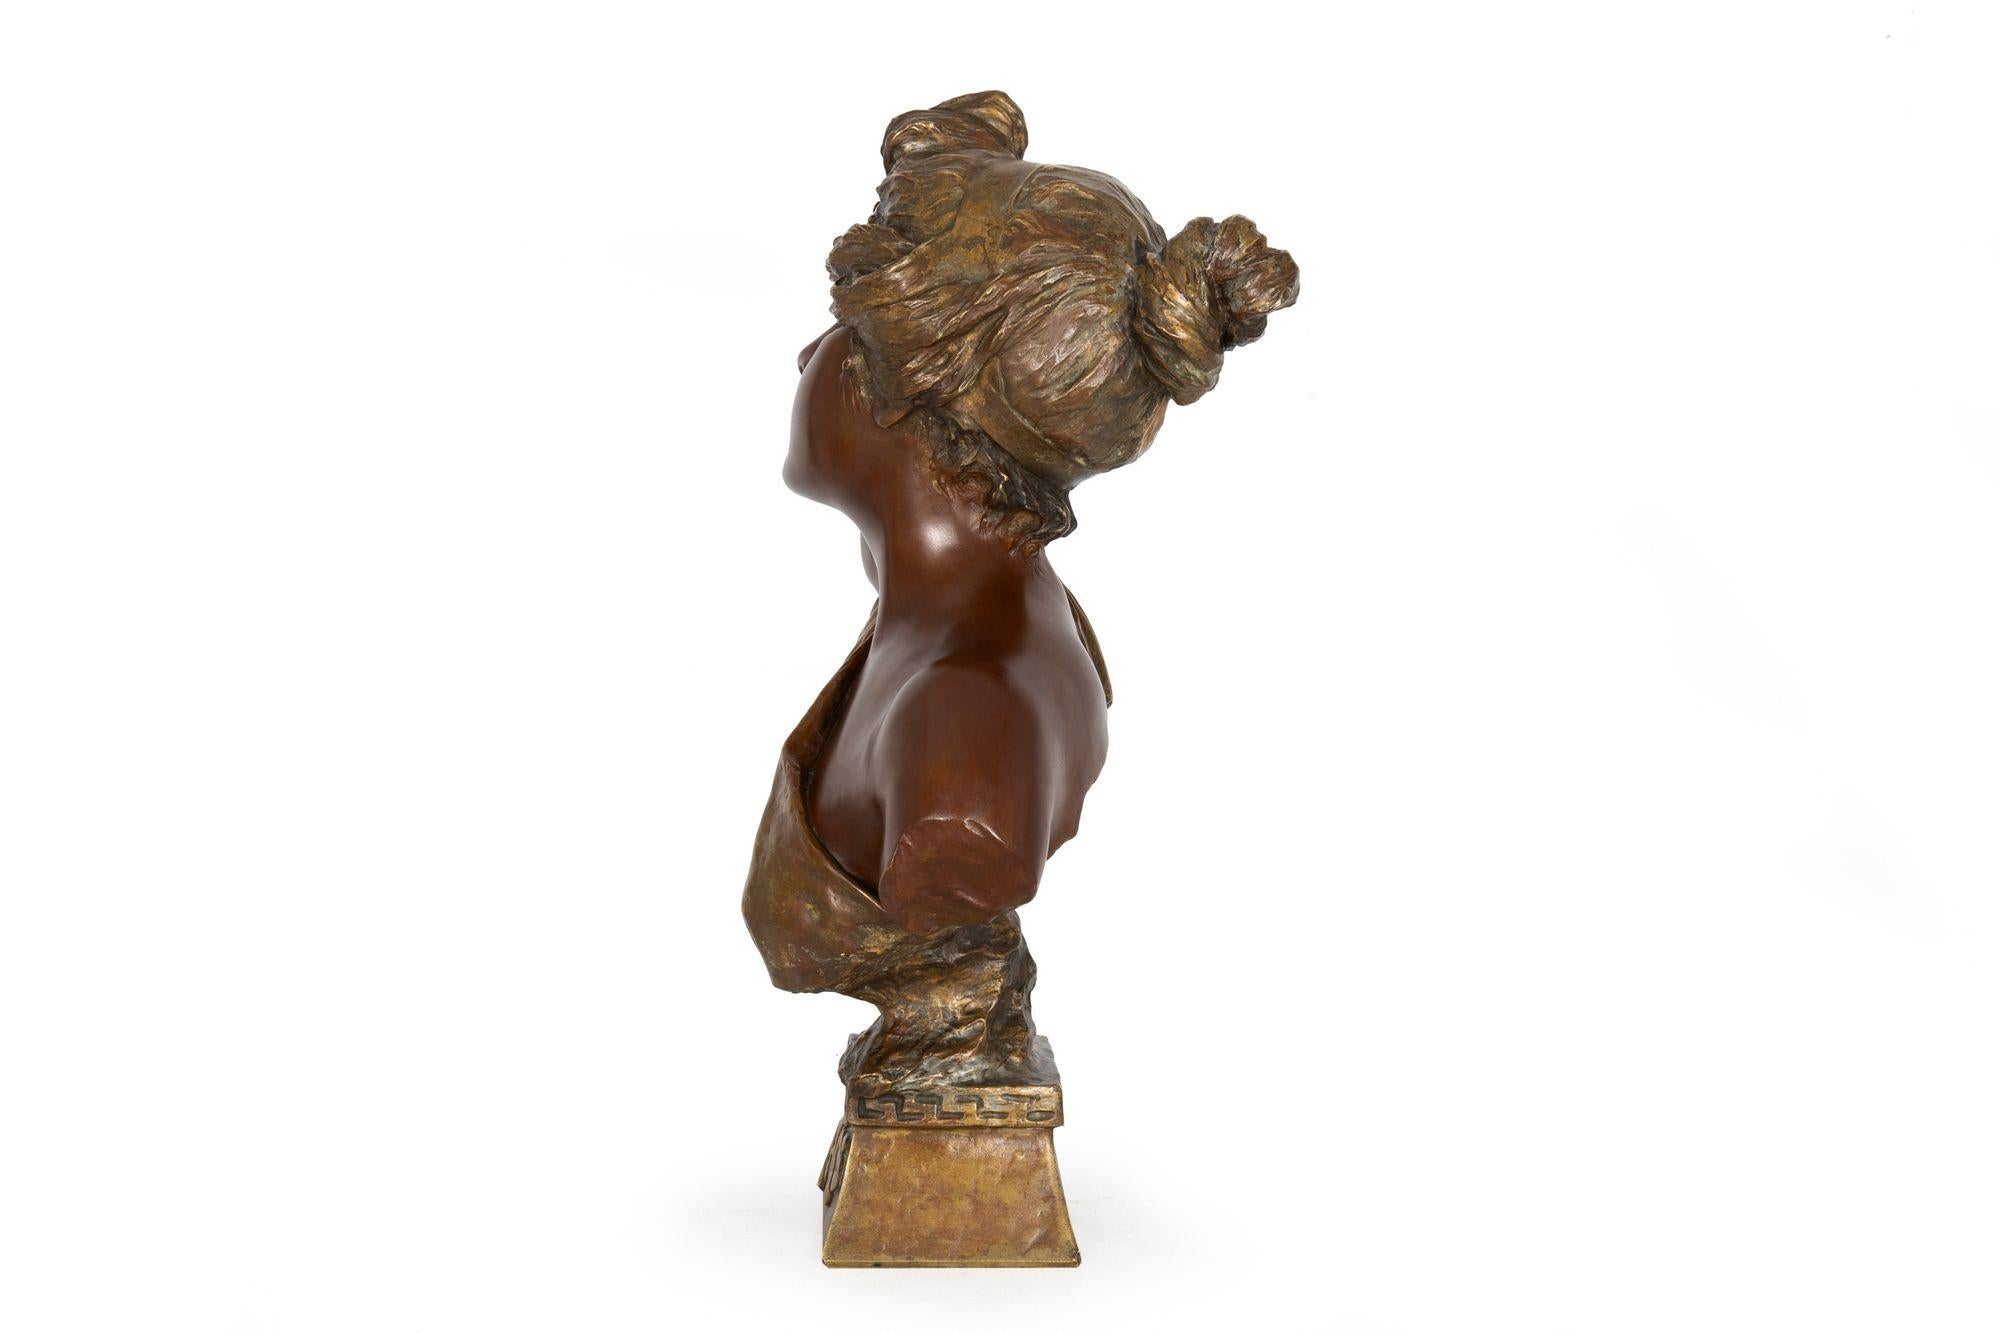 20th Century French Art Nouveau Bronze Sculpture “Bust of Thais” by Emmanuel Villanis For Sale